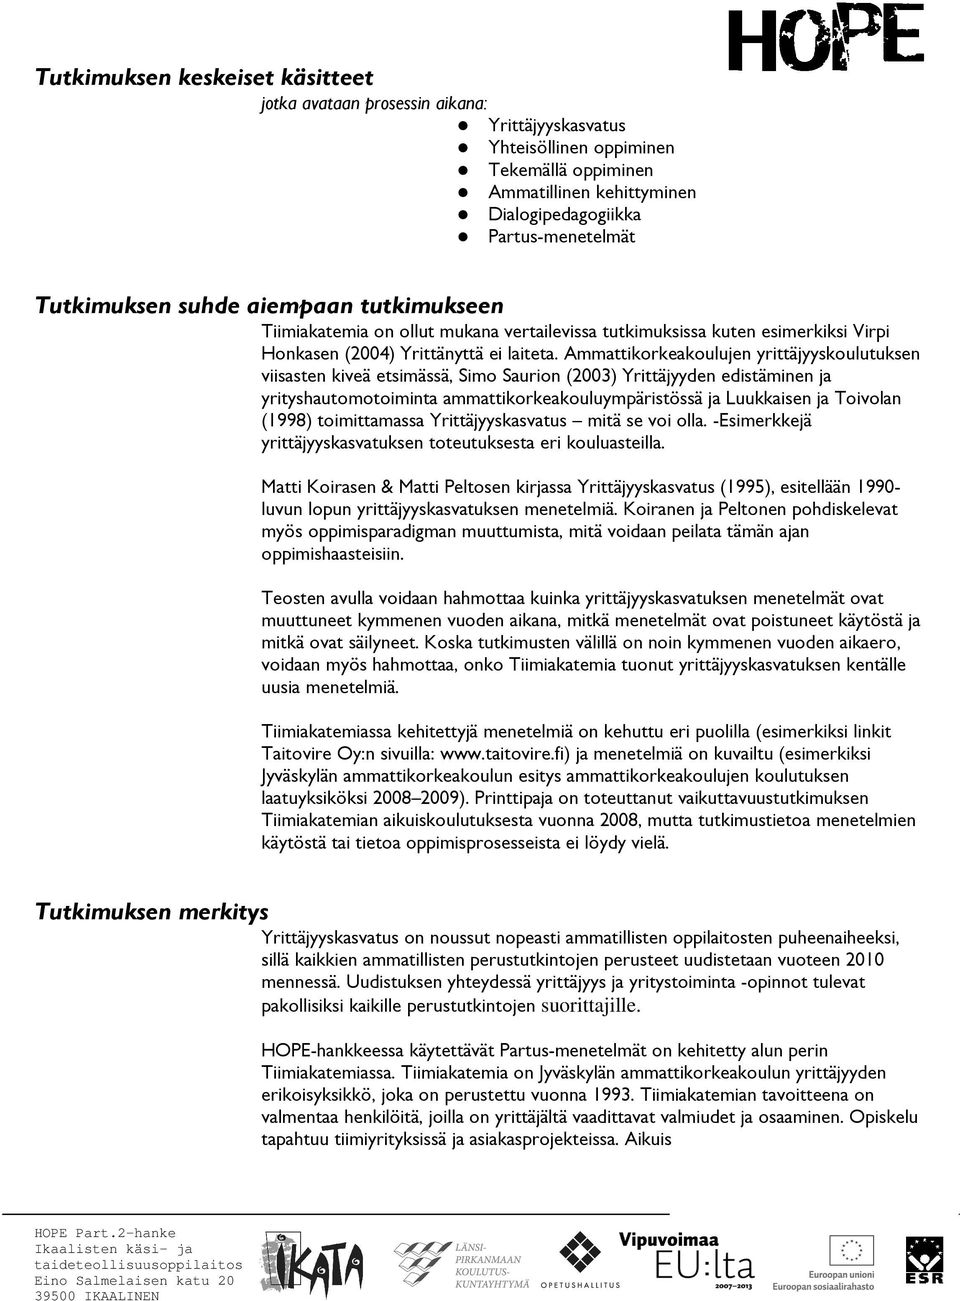 Ammattikorkeakoulujen yrittäjyyskoulutuksen viisasten kiveä etsimässä, Simo Saurion (2003) Yrittäjyyden edistäminen ja yrityshautomotoiminta ammattikorkeakouluympäristössä ja Luukkaisen ja Toivolan